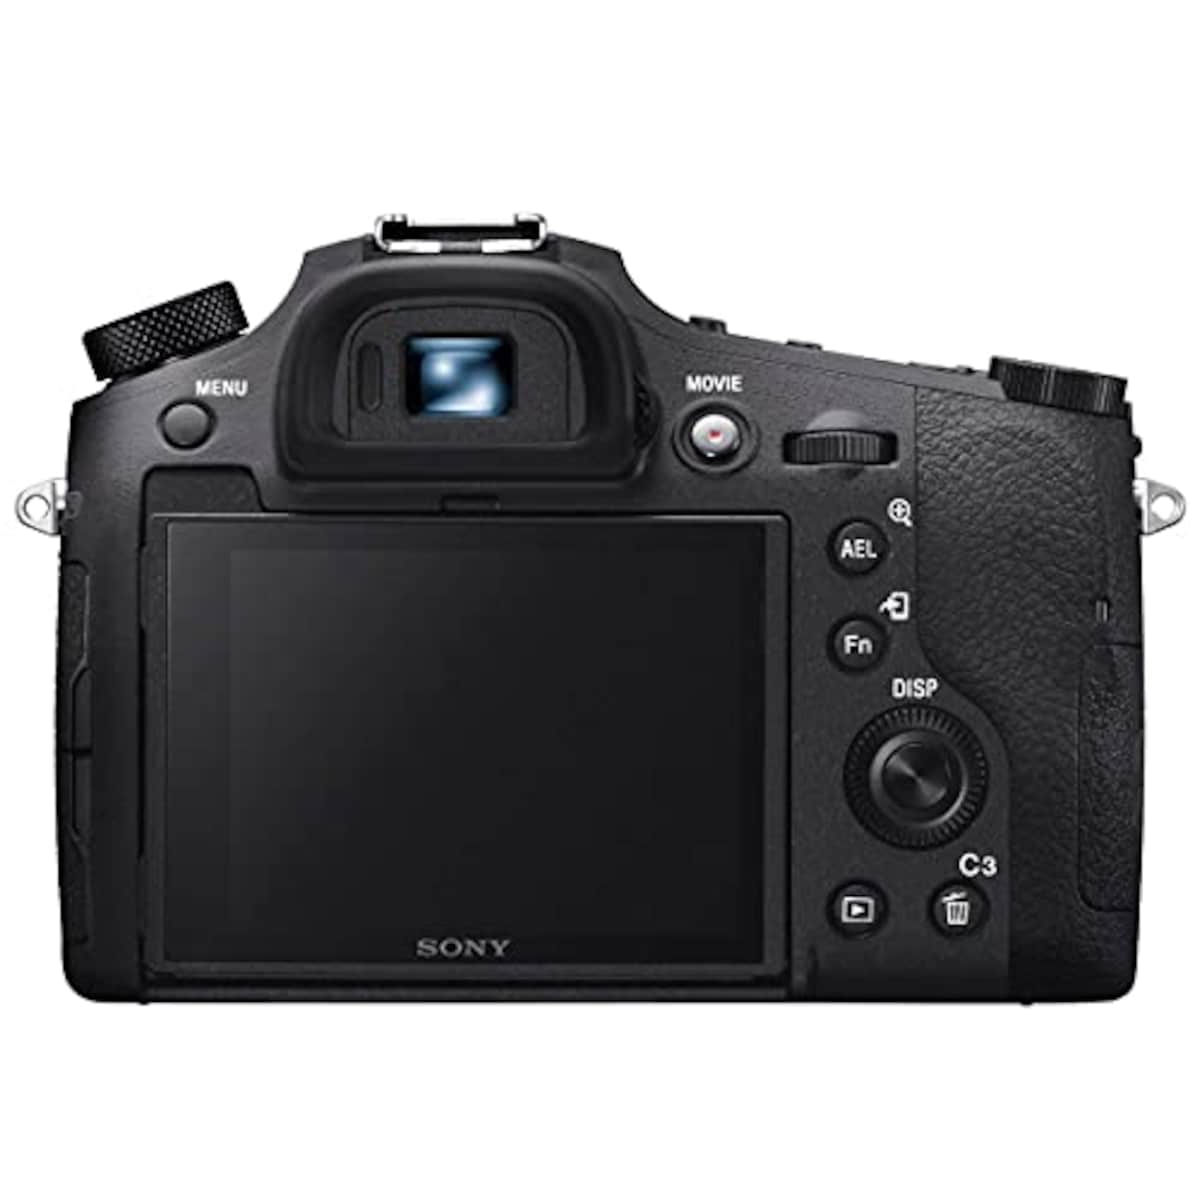  【RX10M4 と ジャケットケース セット】 大切なカメラをキズや汚れからガードしたい方に。DSC-RX10M4 + LCJ-RXJ画像10 